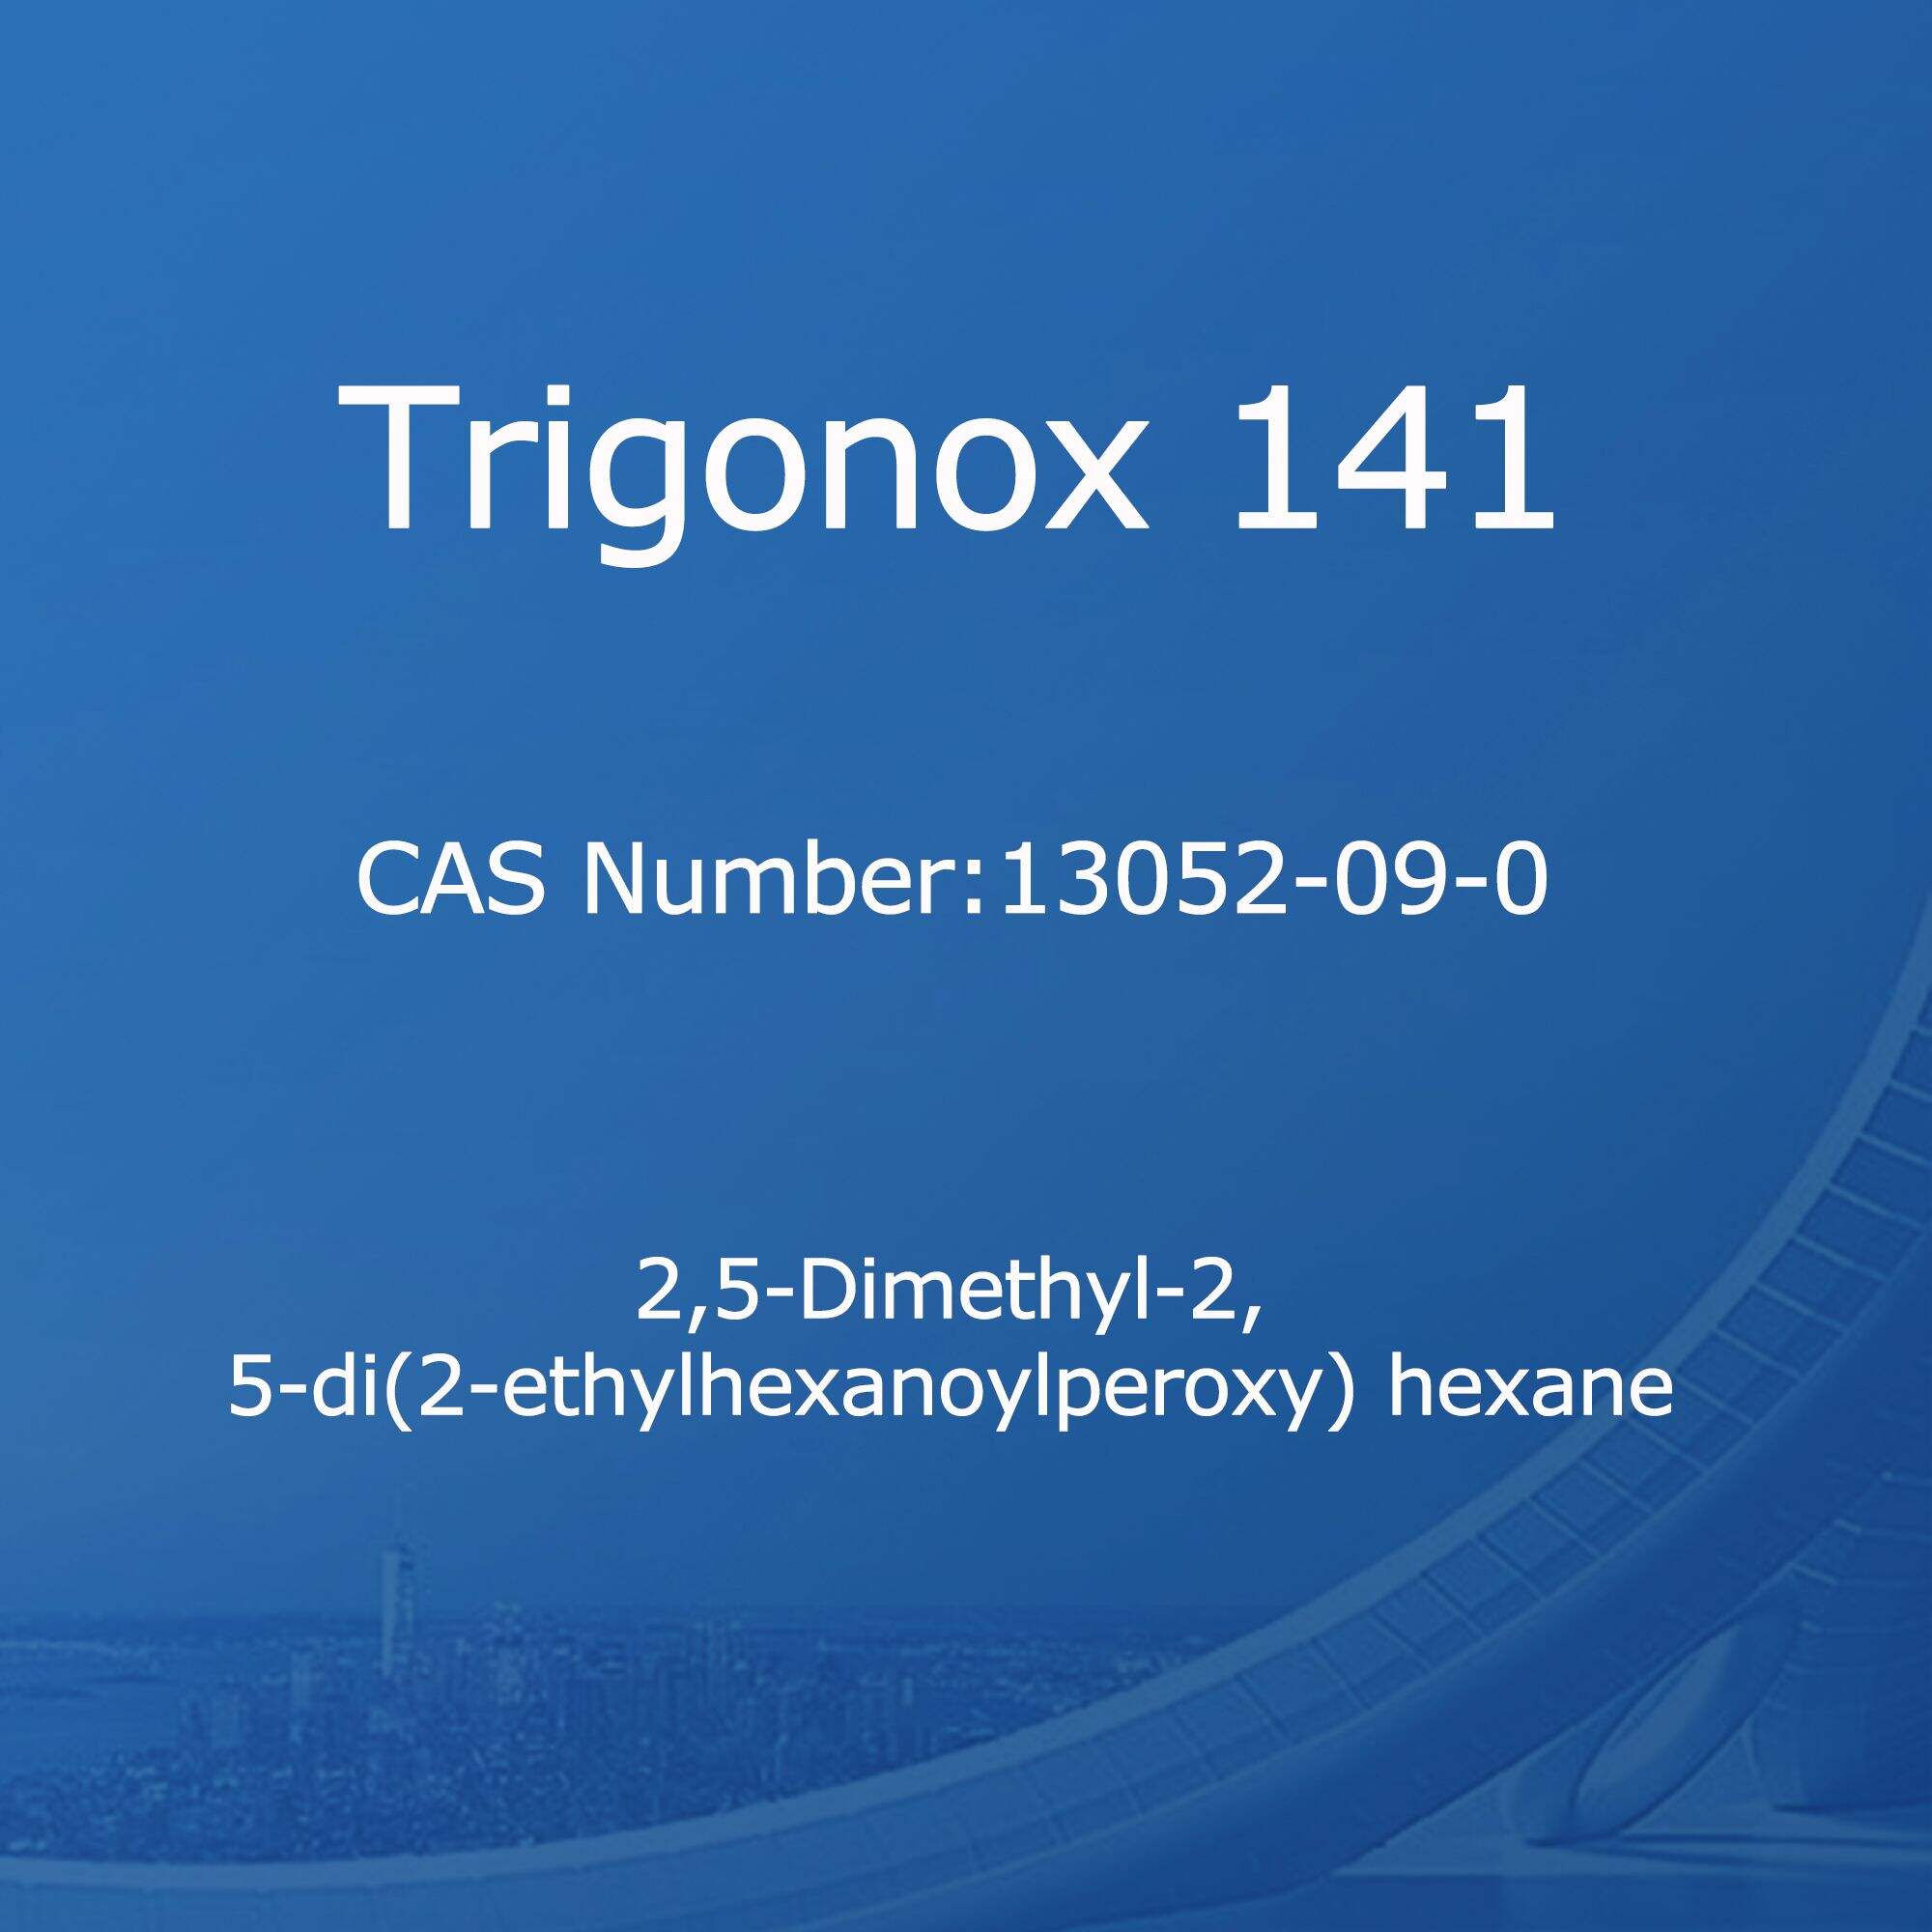 Trigonox 141,2,5-Dimethyl-2,5-di(2-ethylhexanoylperoxy) hexane